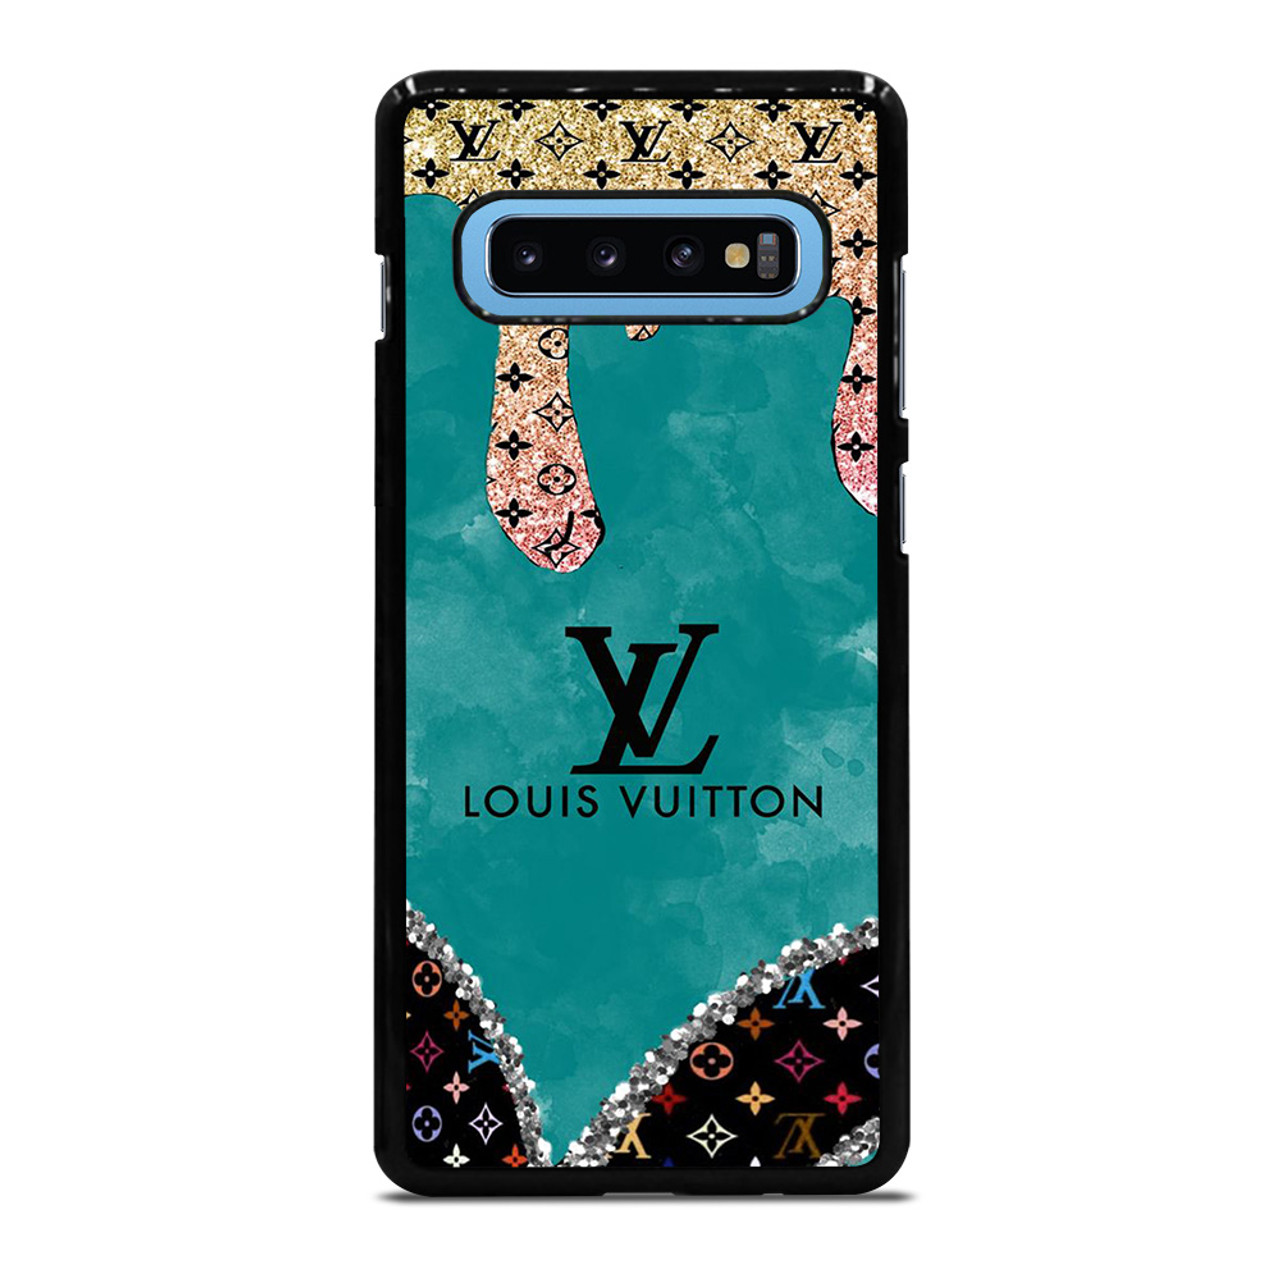 LOUIS VUITTON LV LOGO UNIQUE PATTERN Samsung Galaxy S10 Plus Case Cover